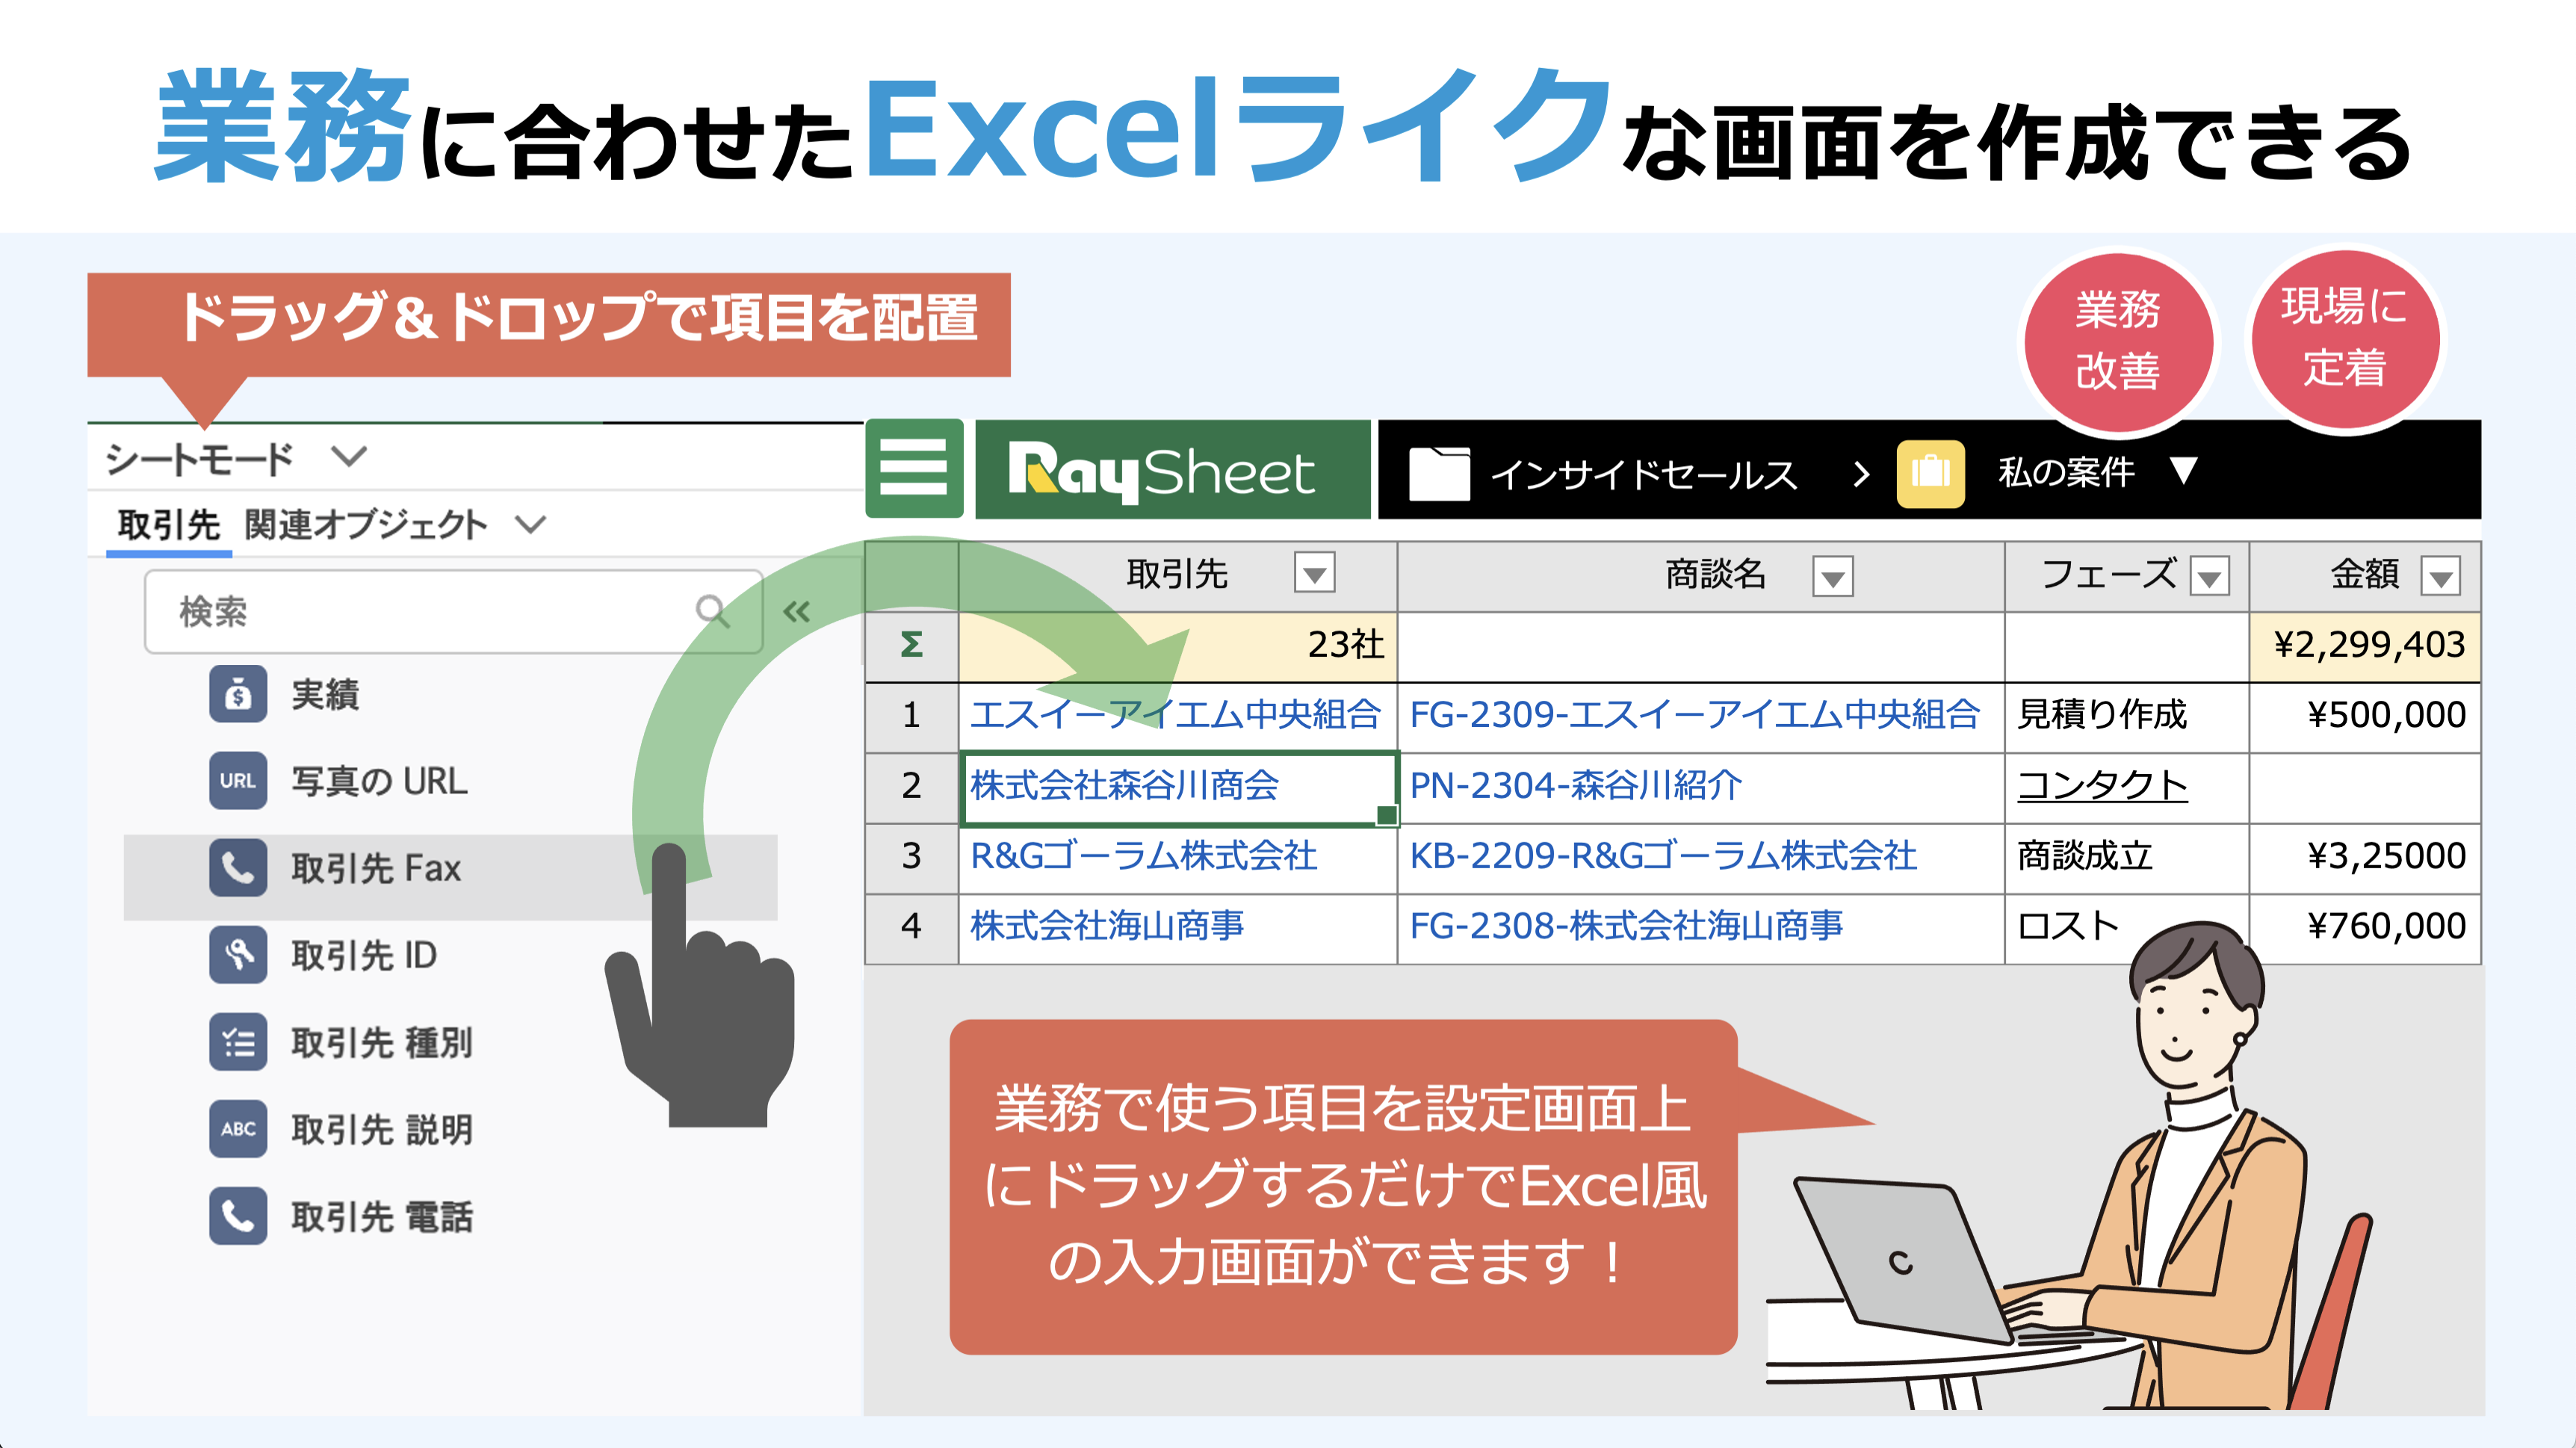 RaySheet - Excelのような一覧インターフェースでSalesforceの画面と 